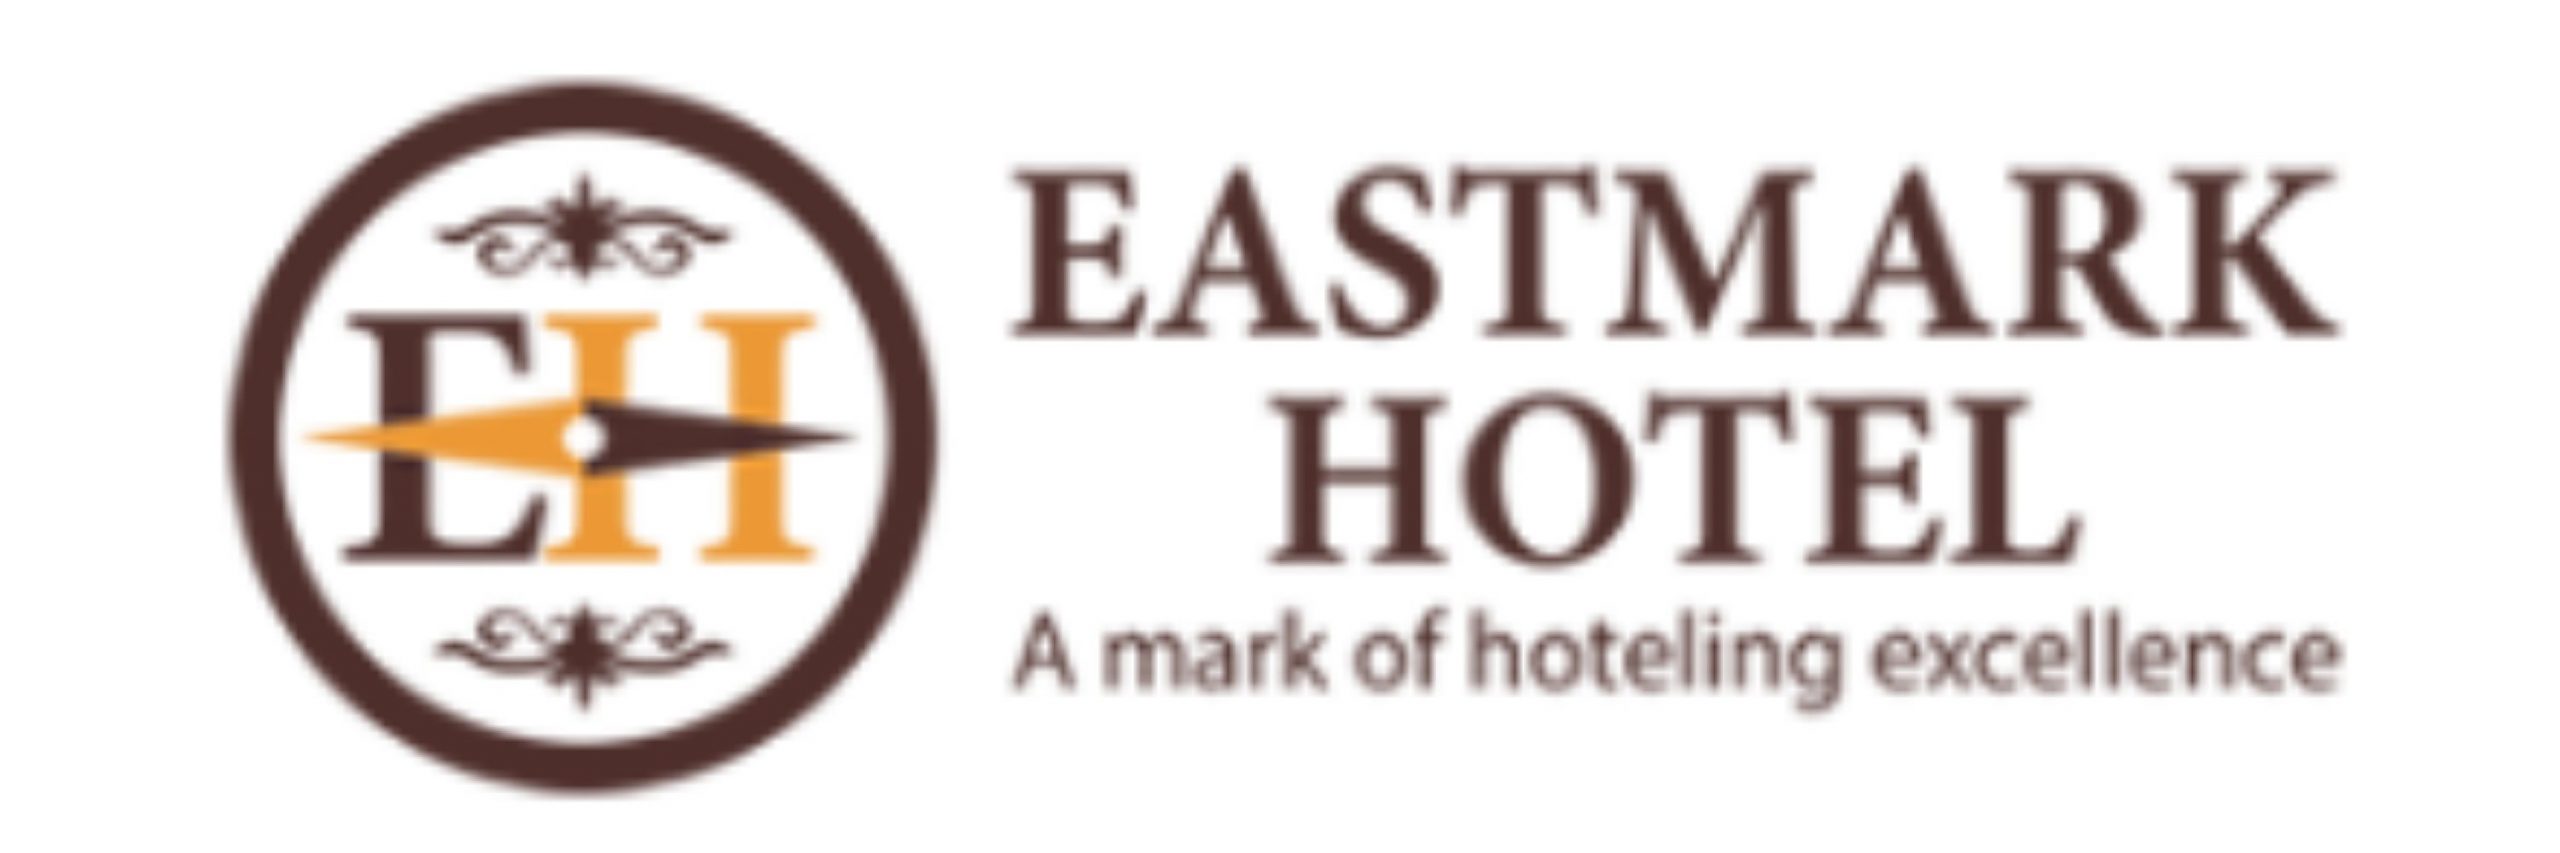 Eastmark Hotel |   Cart